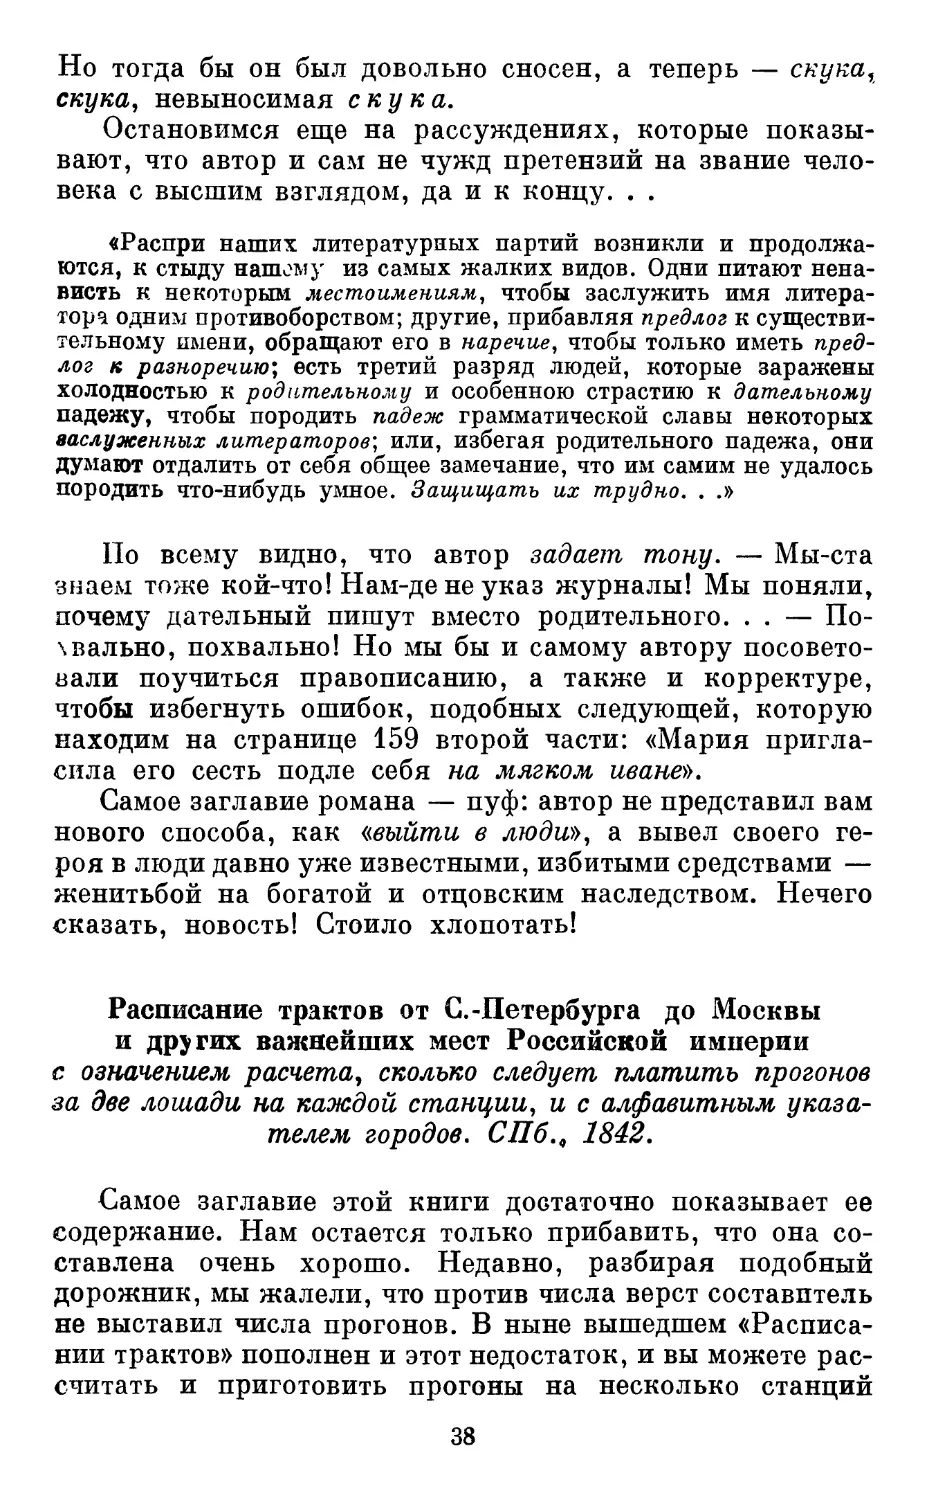 Расписание трактов от С.-Петербурга до Москвы и других важнейших мест Российской империи